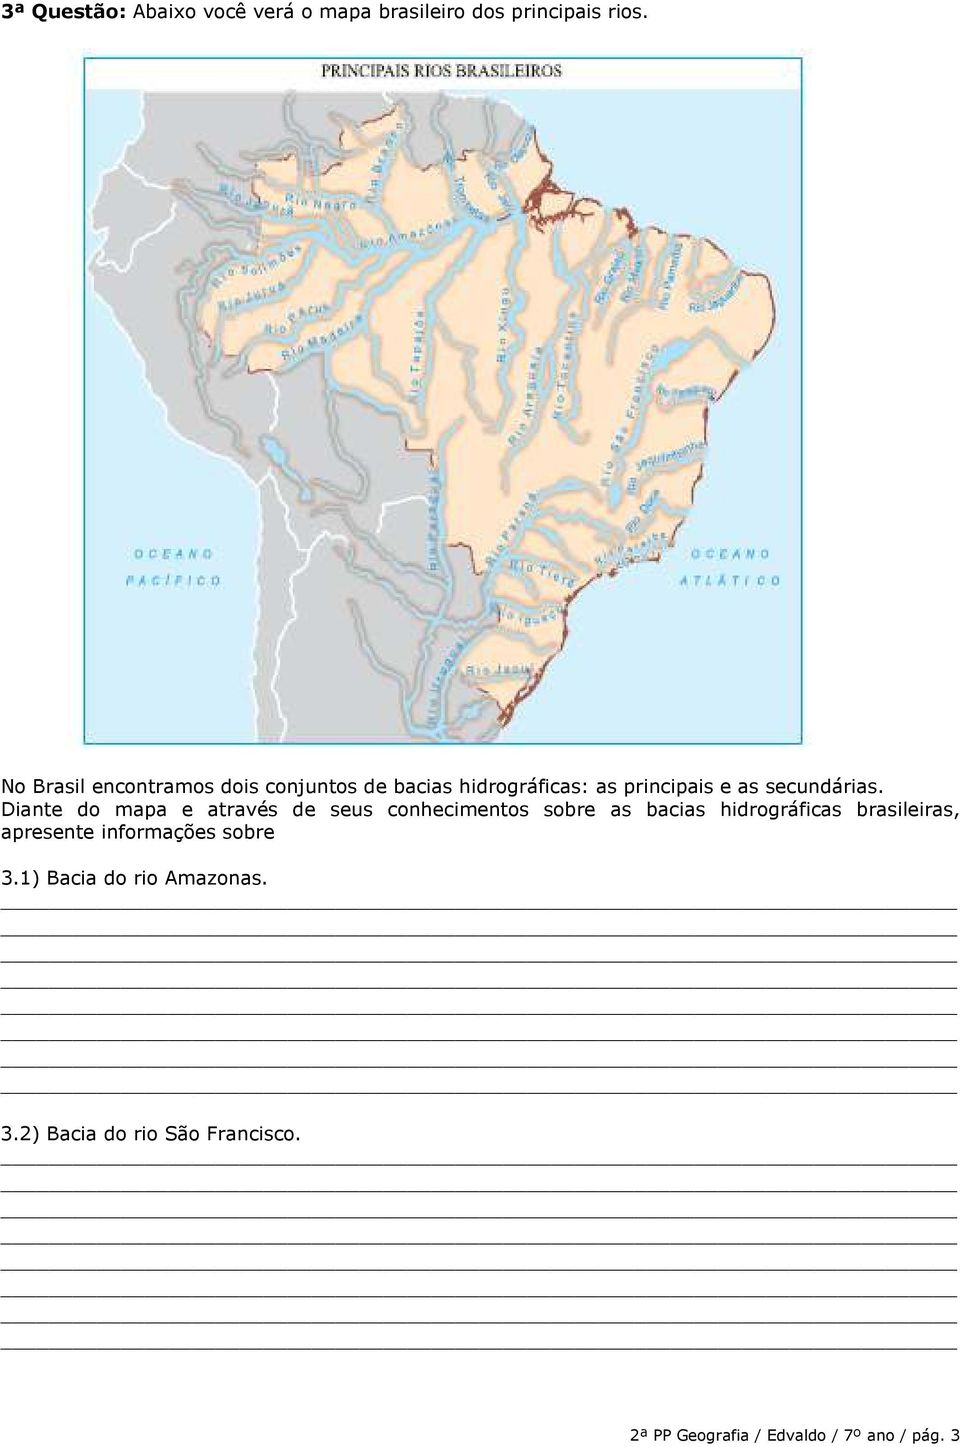 Diante do mapa e através de seus conhecimentos sobre as bacias hidrográficas brasileiras,